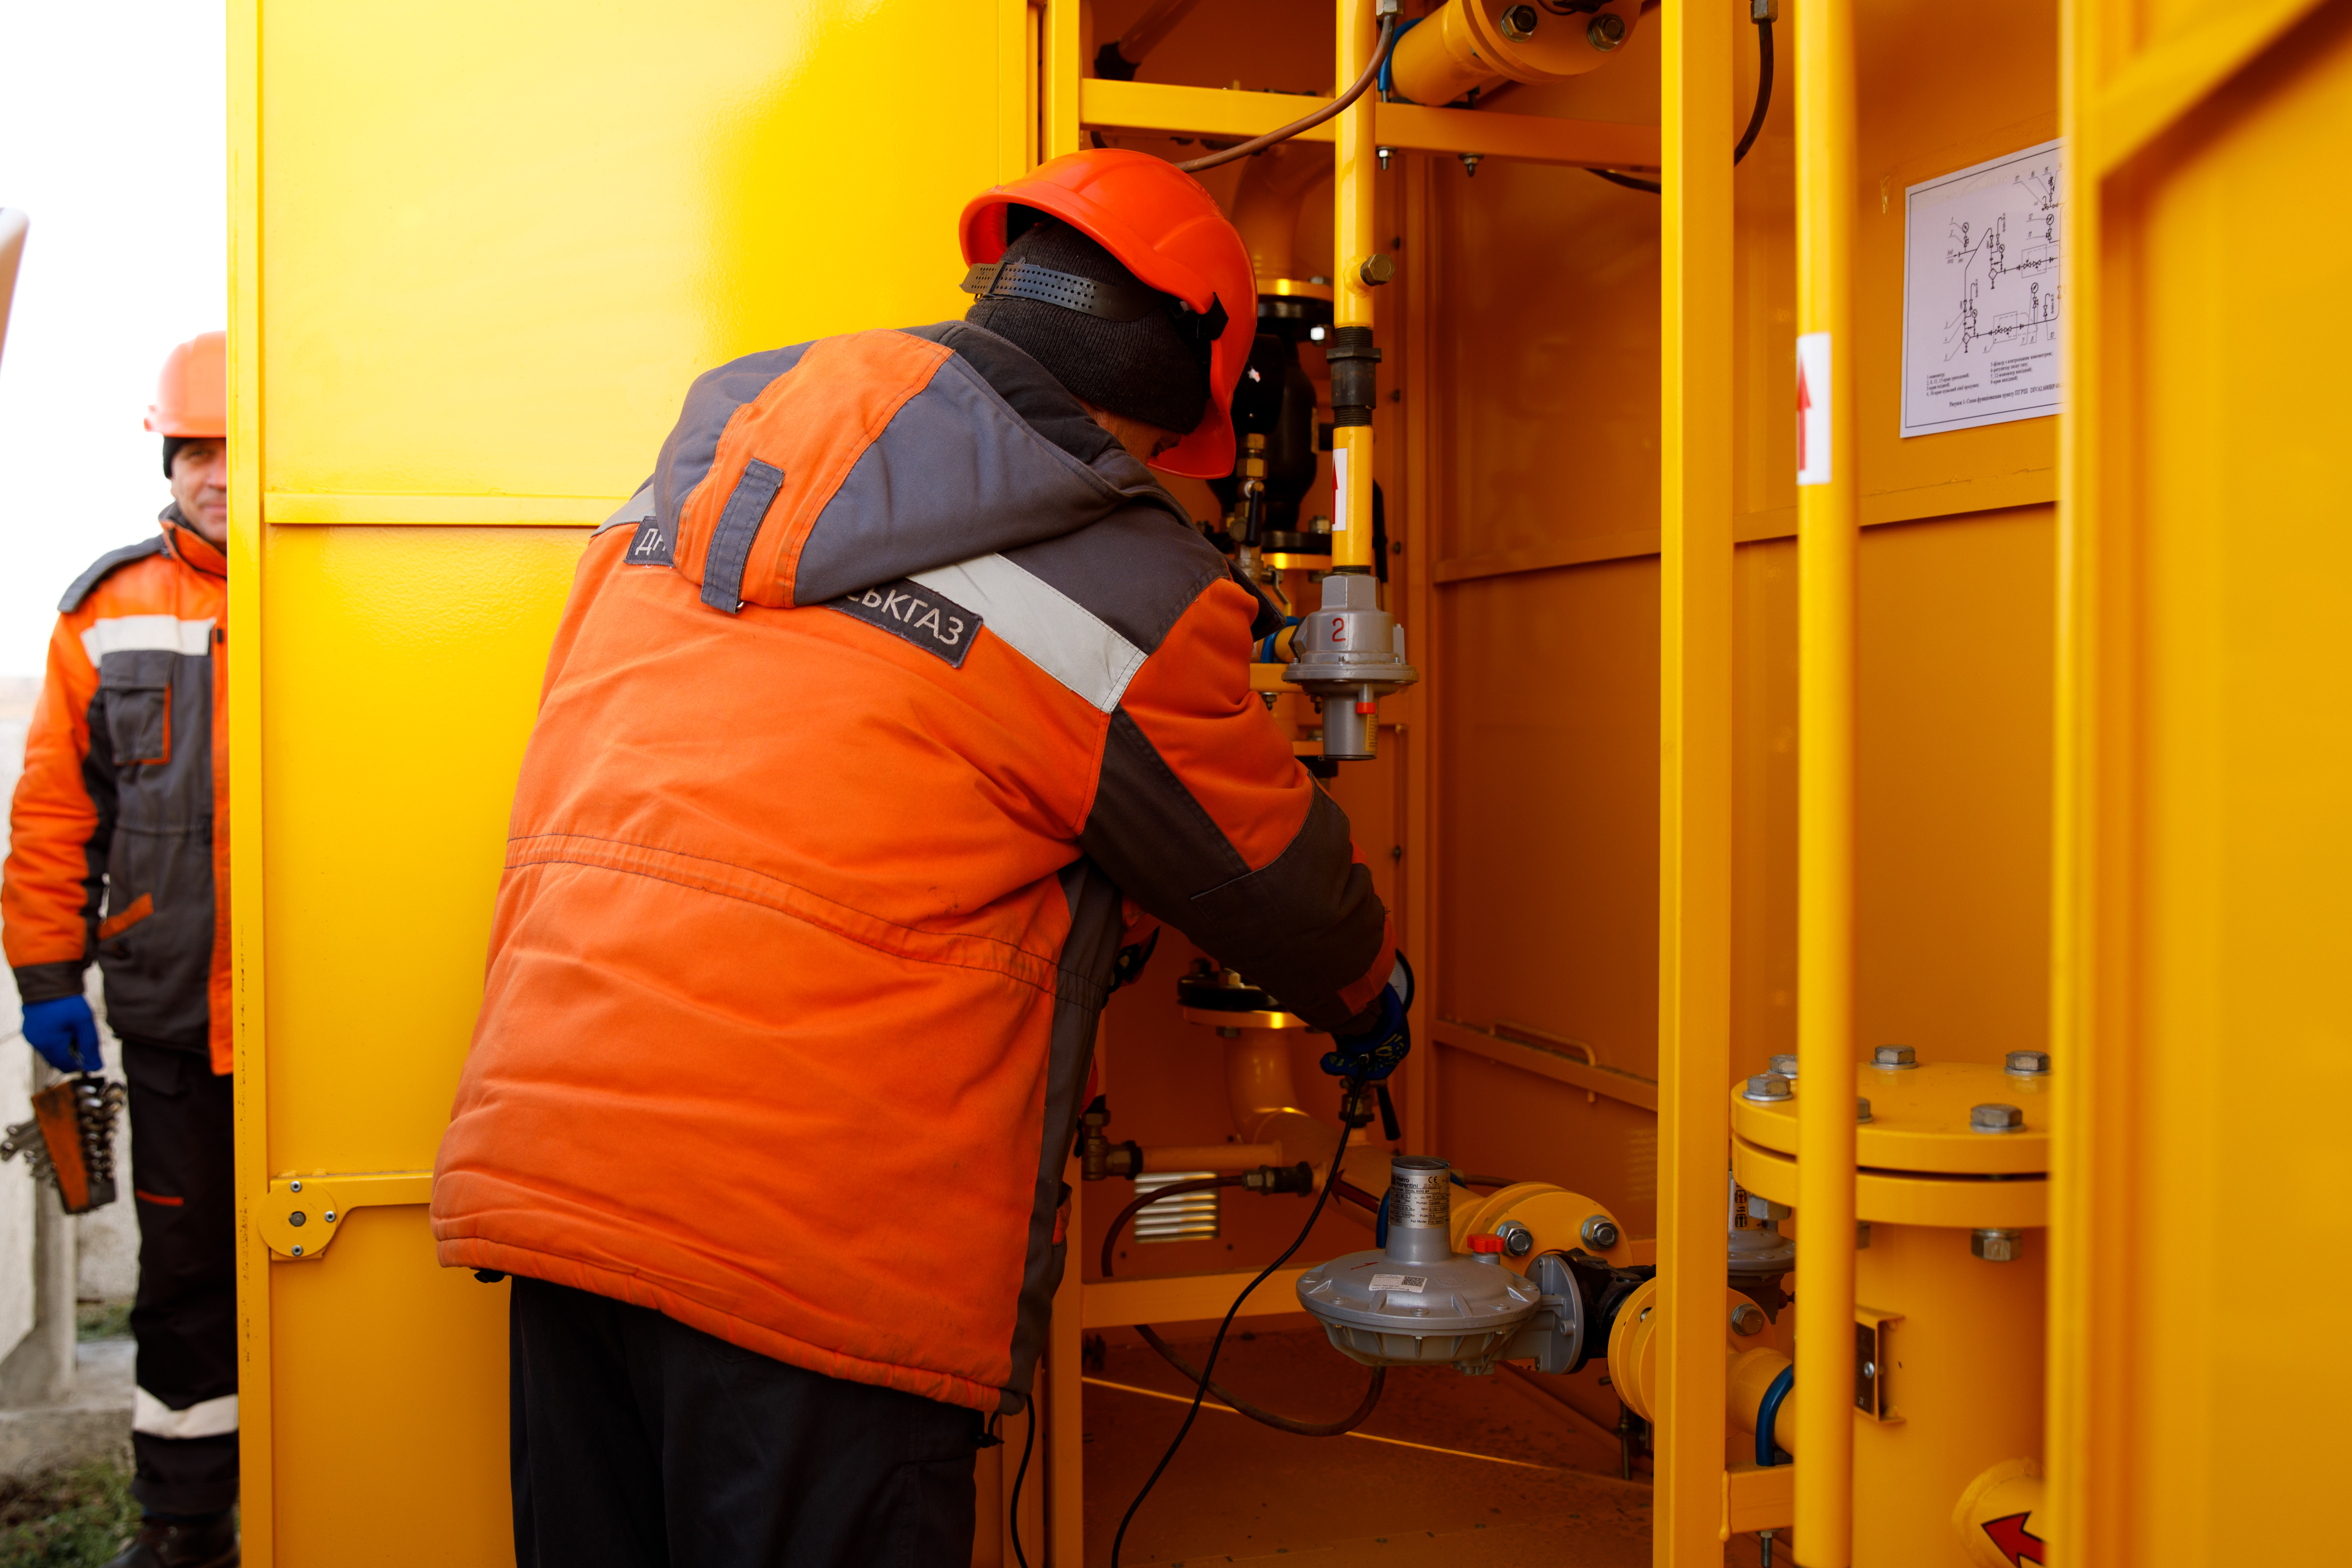 Газовые услуги под ключ от Днепропетровскгаза - качество и безопасность от профессионалов